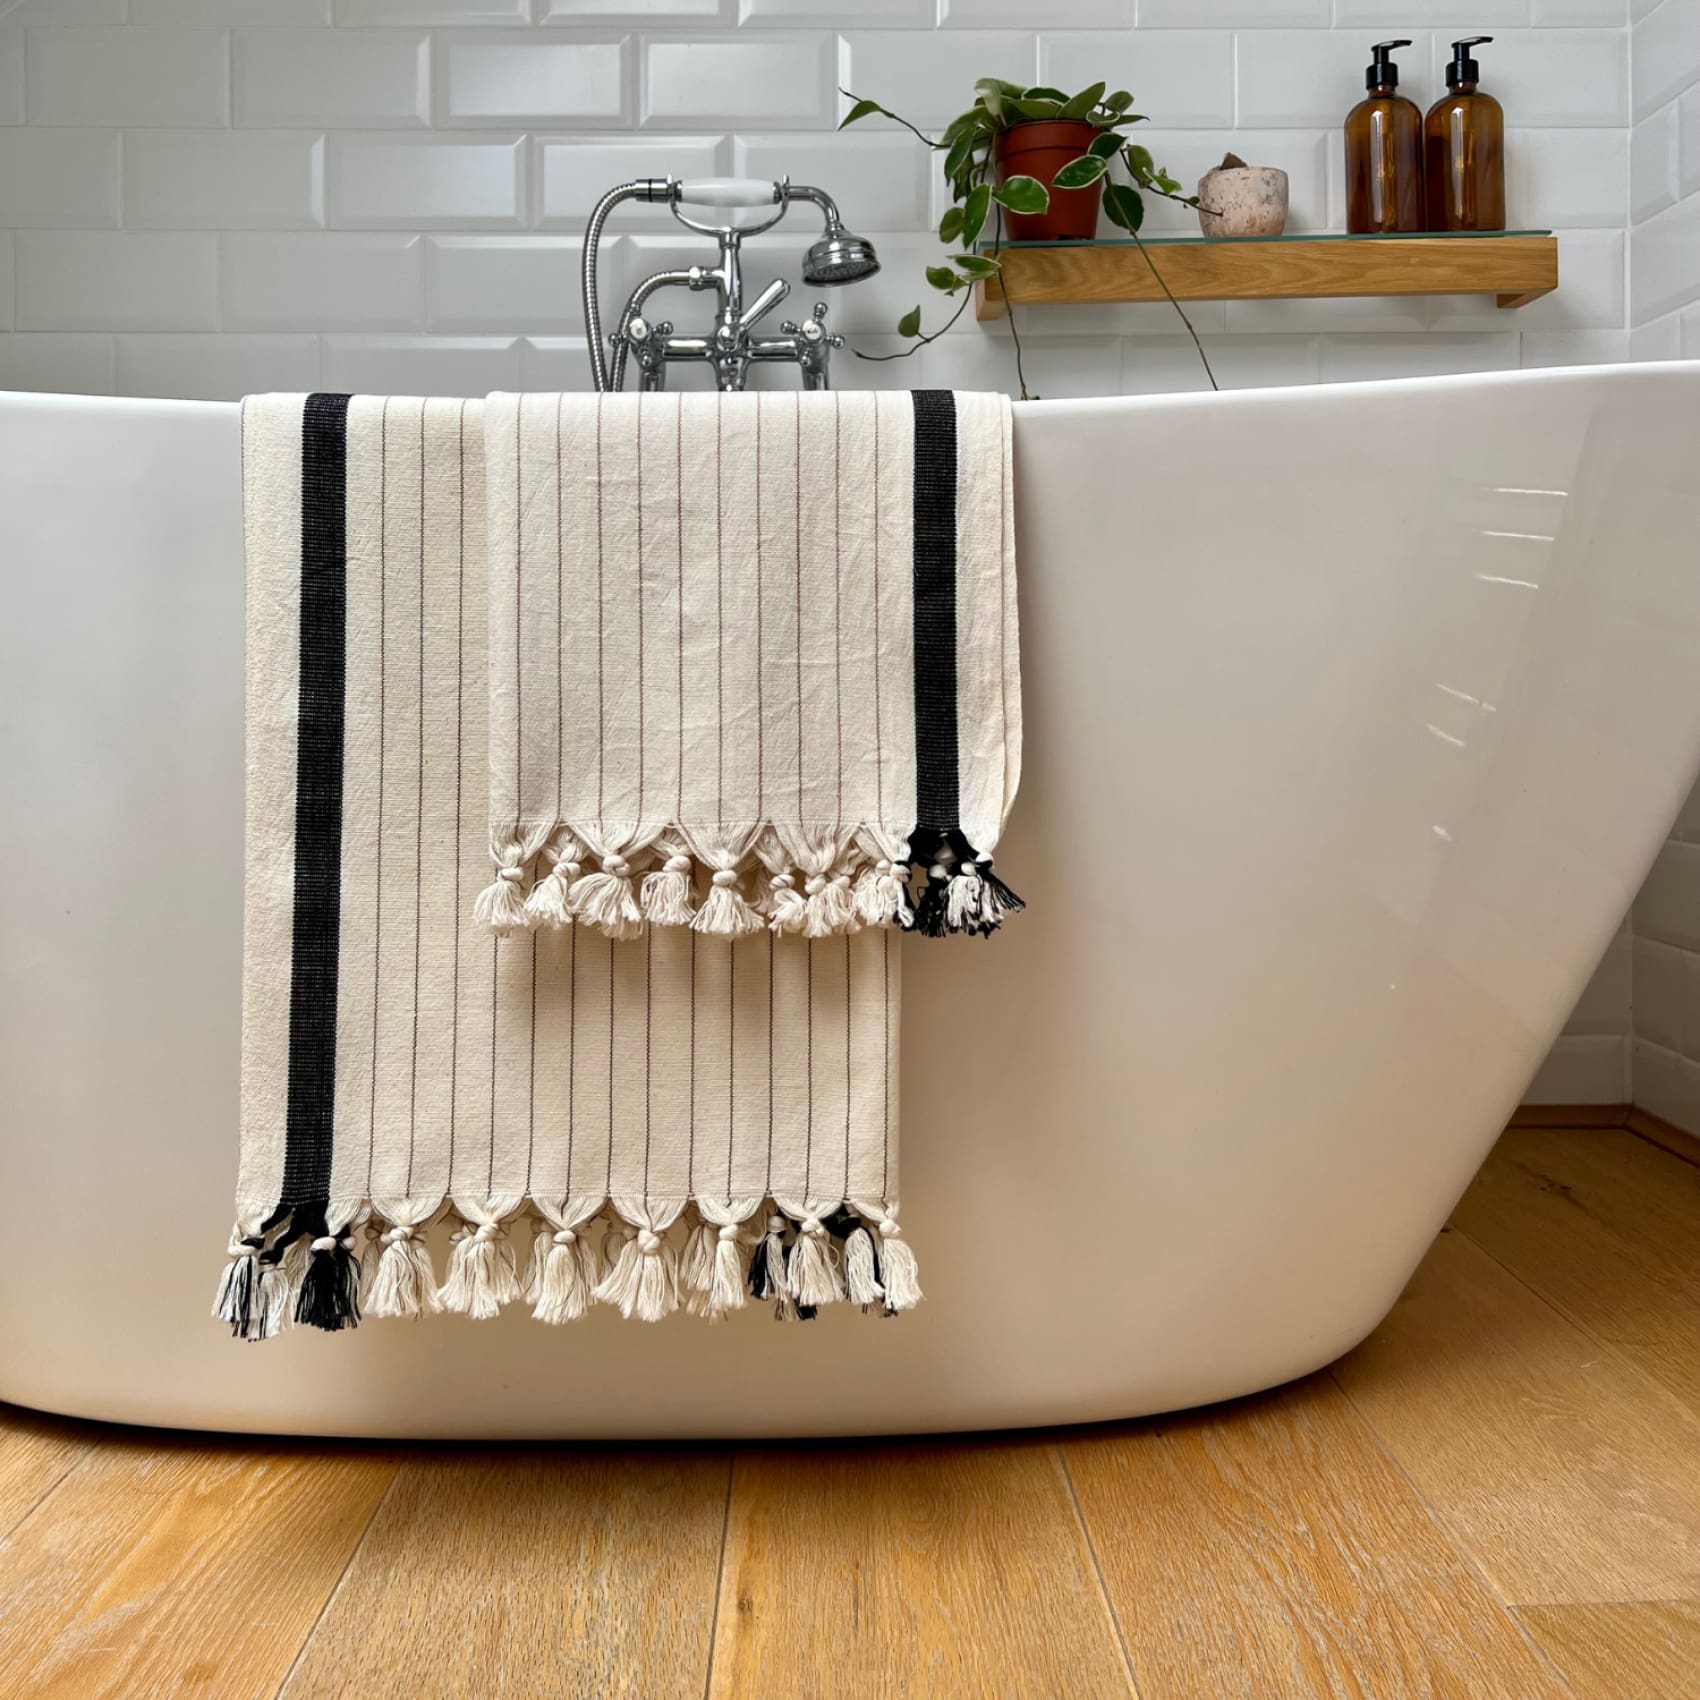 capella-cotton-bath-hand-towel-set-save-5-bundle-bundles-duo-peshtemals-luks-linen-plumbing-fixture-beige-437.jpg